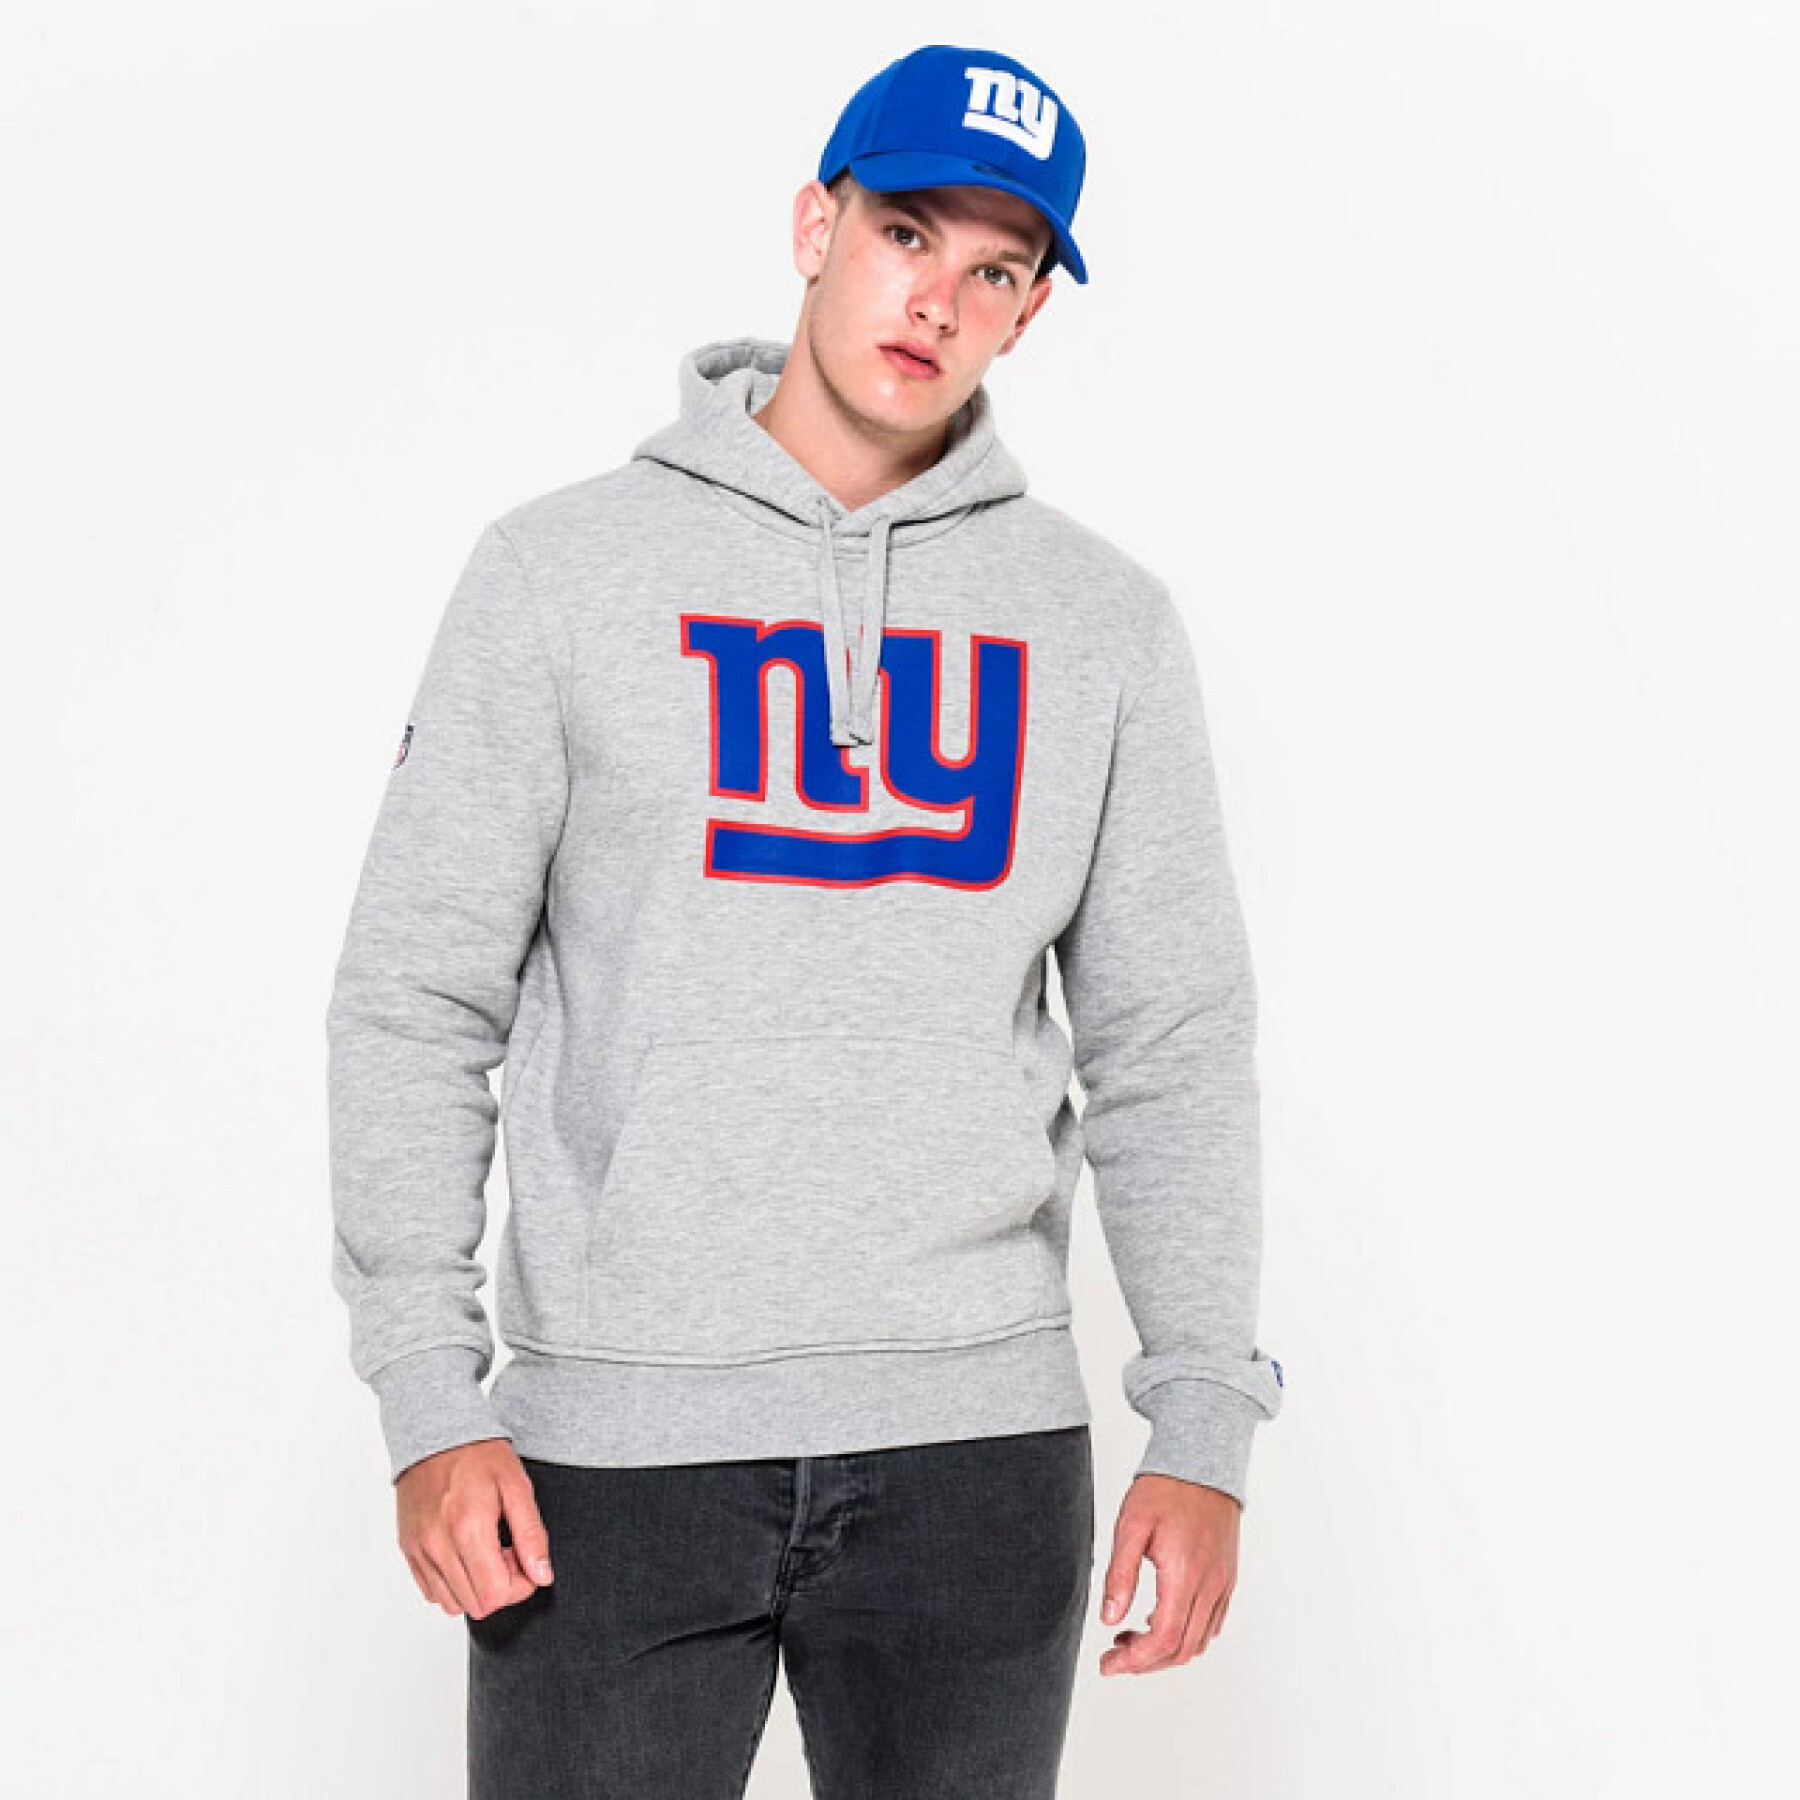 Hooded sweatshirt New York Giants NFL